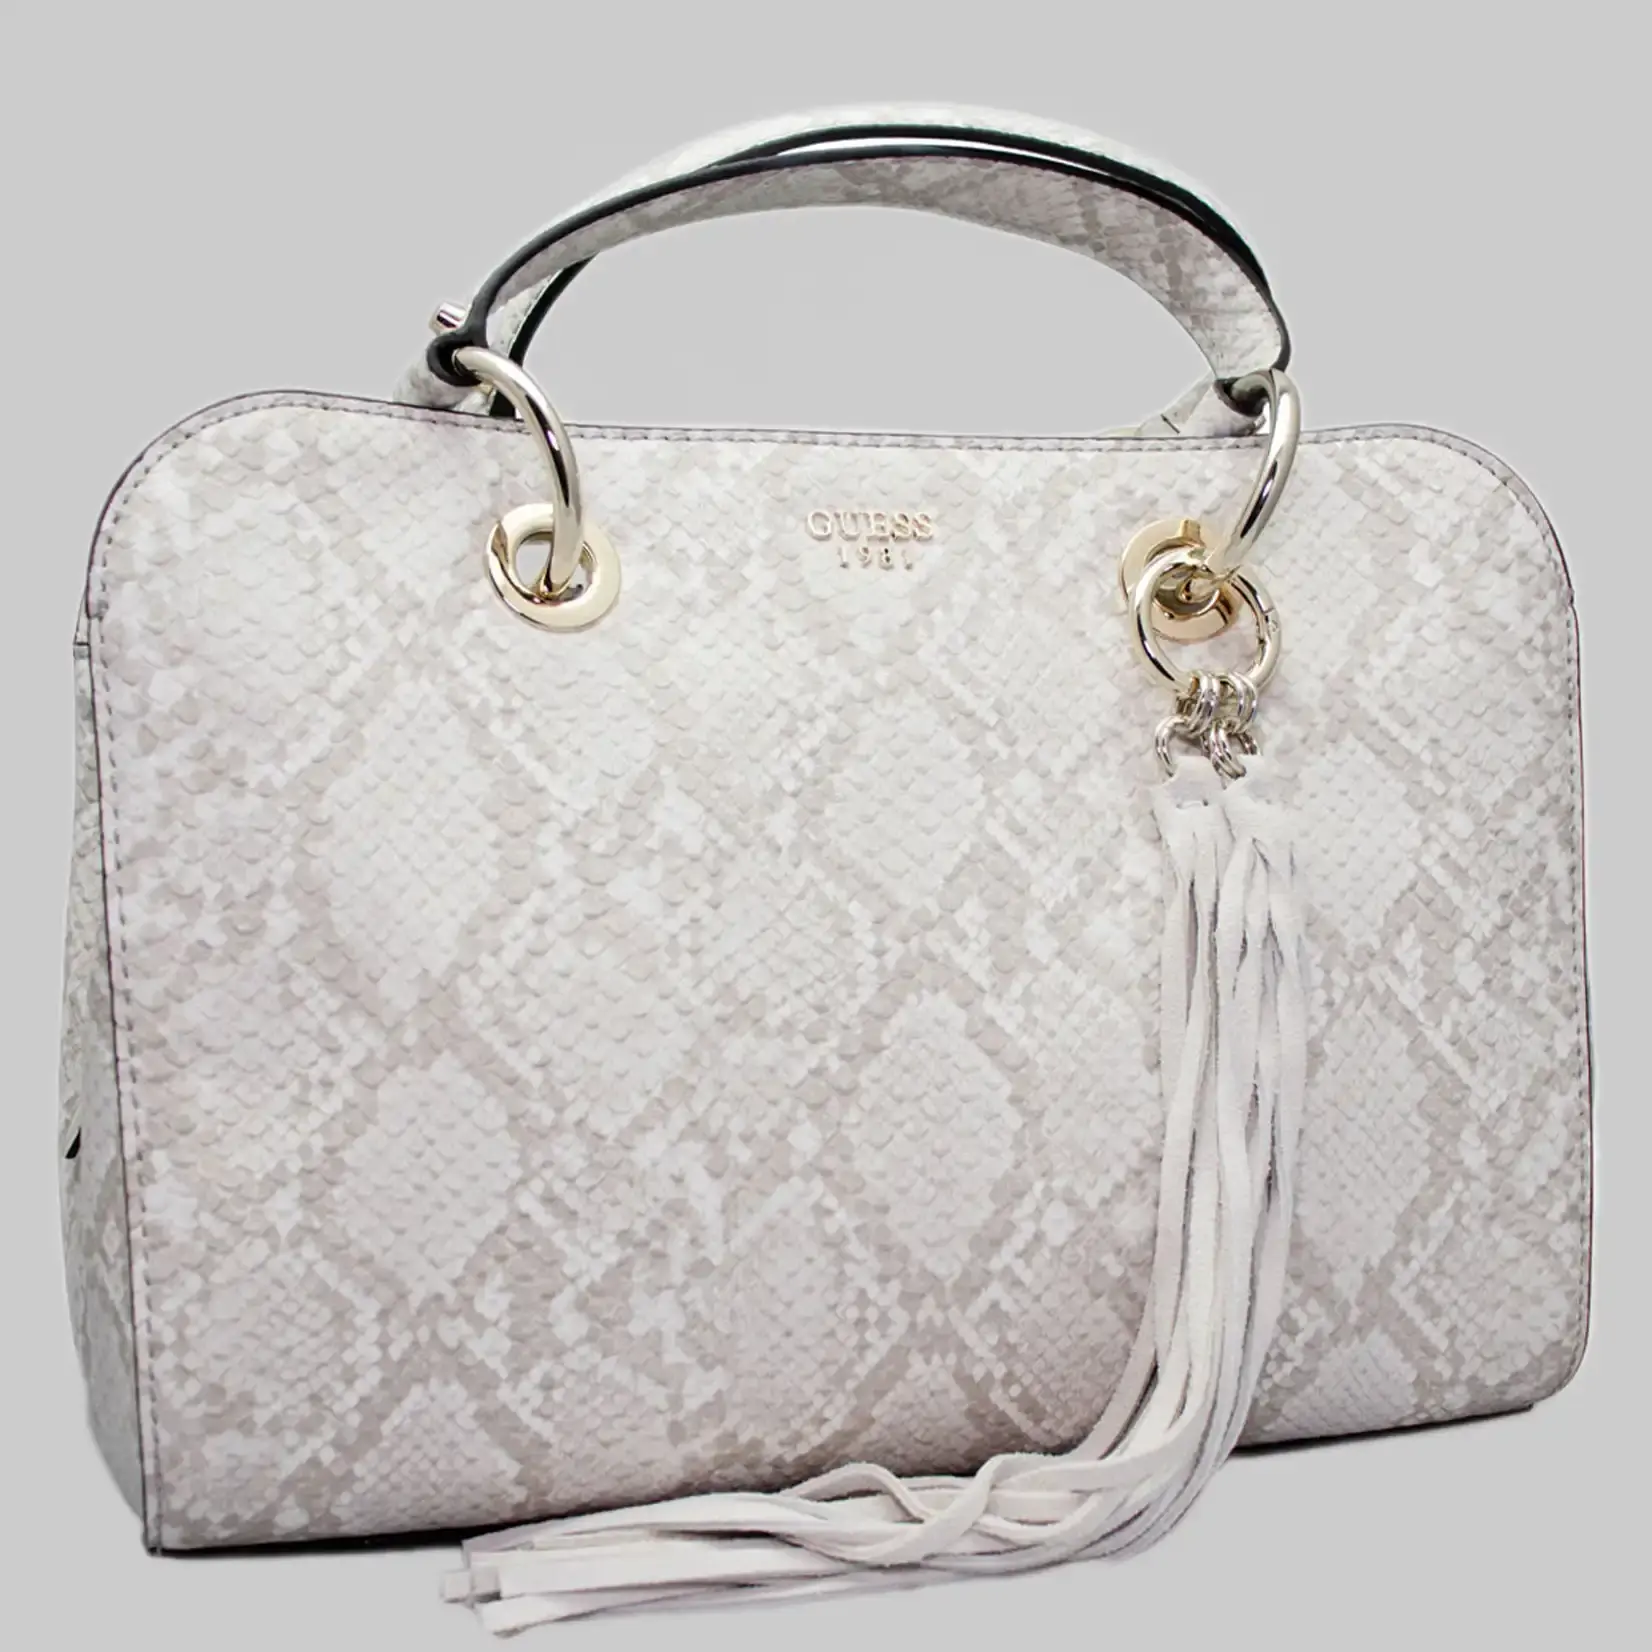 Guess Damen Handtasche aus Kunstleder in Grau-Weiß mit Schlangen-Imitat und Dust Bag